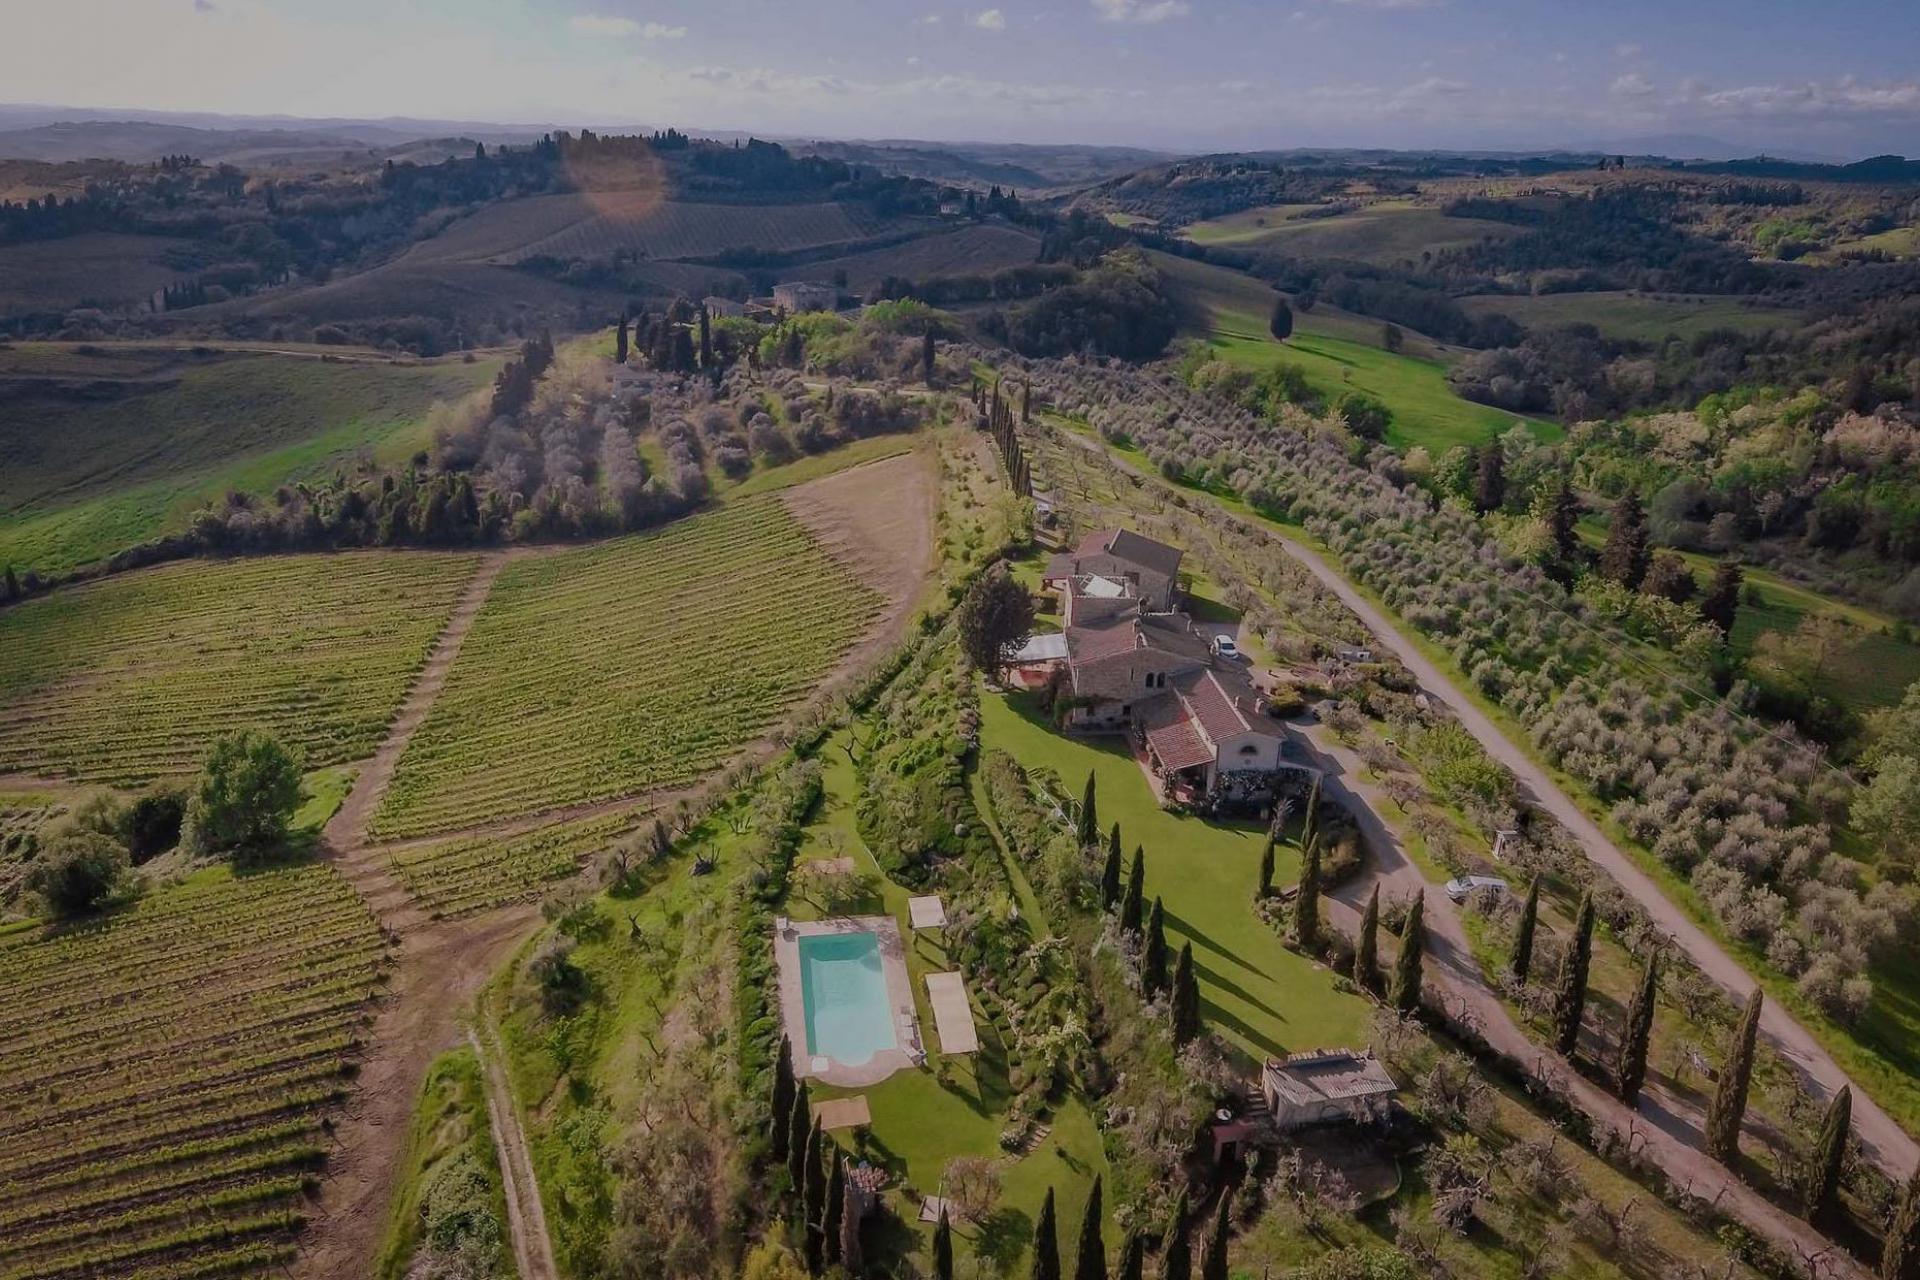 Agriturismo in olijfgaard met super uitzicht in Toscane